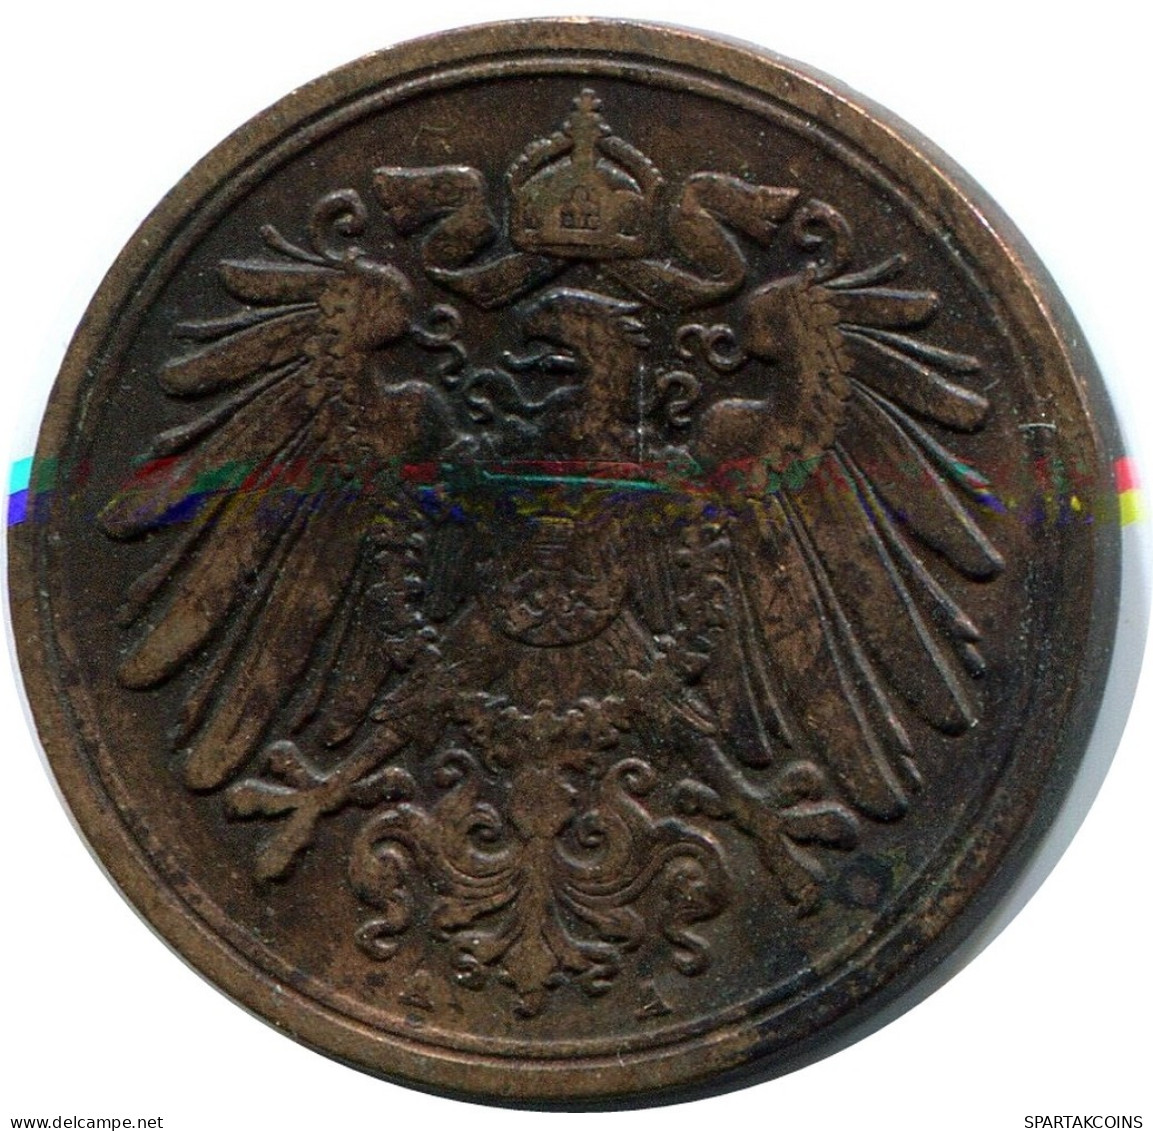 1 PFENNIG 1908 A GERMANY Coin #DB763.U.A - 1 Pfennig